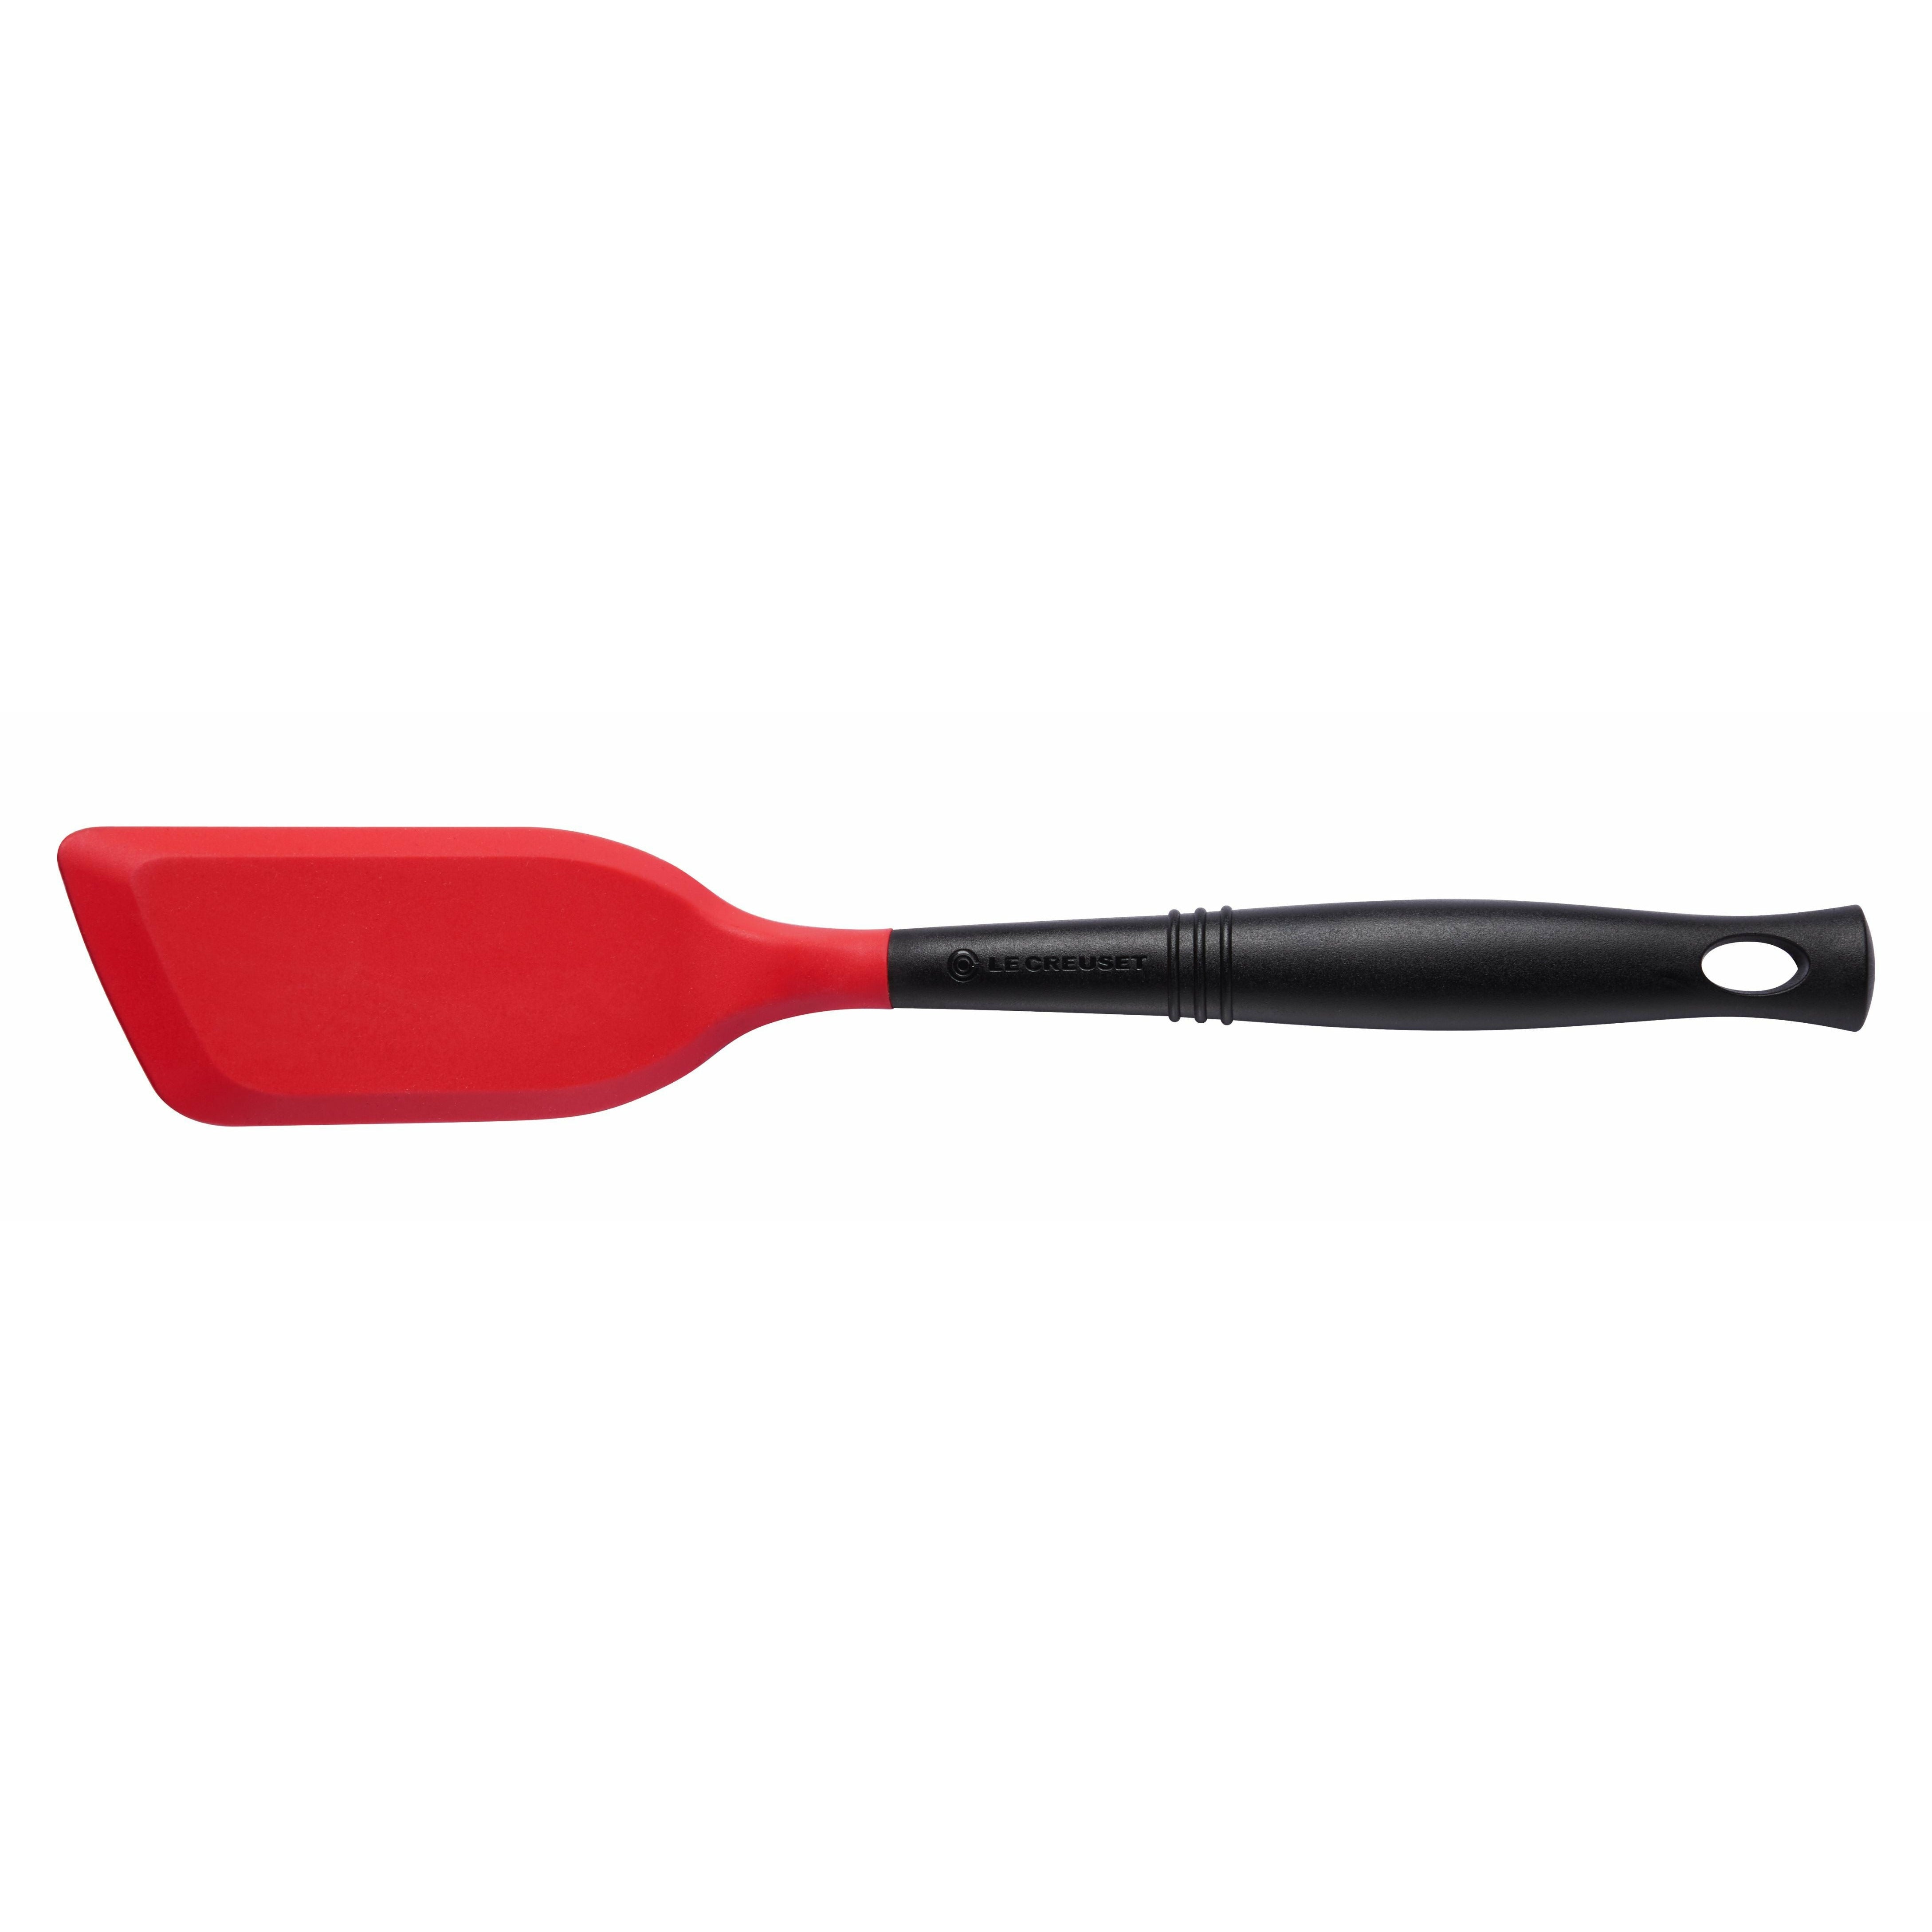 Le Creuset Edge premium de spatule étroite, rouge cerise